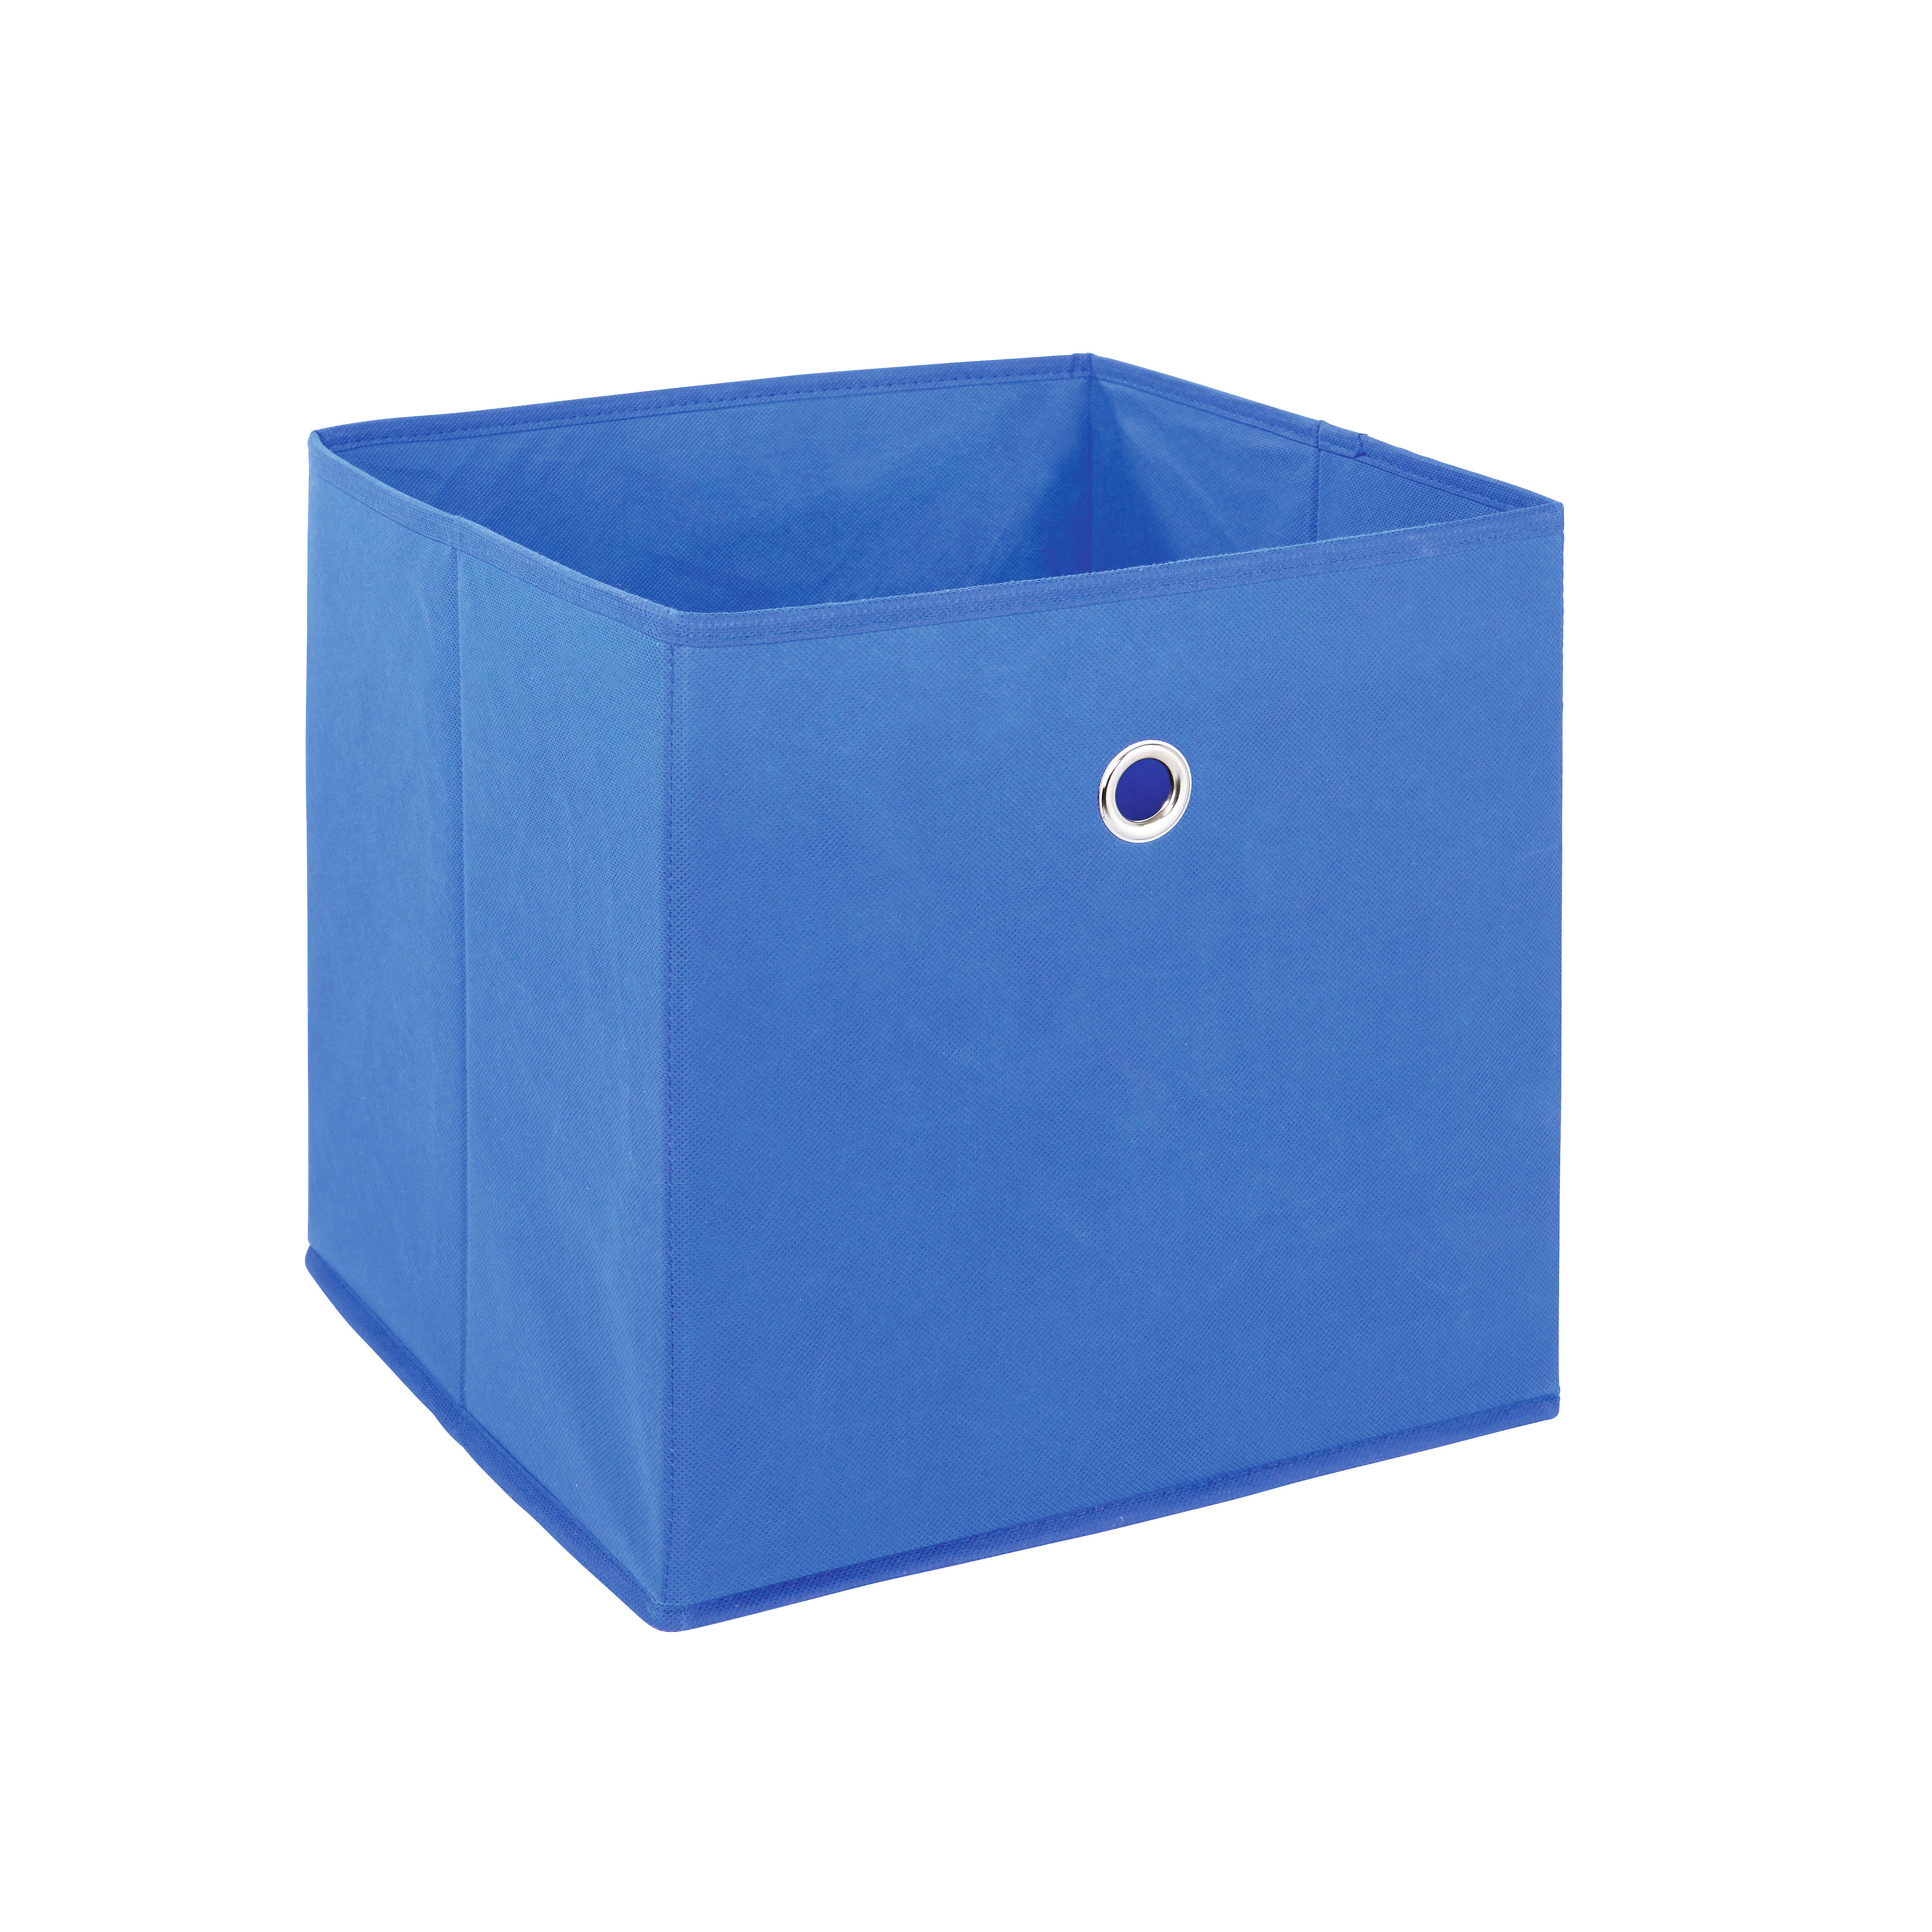 SKLADACÍ BOX, textil, 32/31/32 cm - modrá, Design, textil (32/31/32cm)